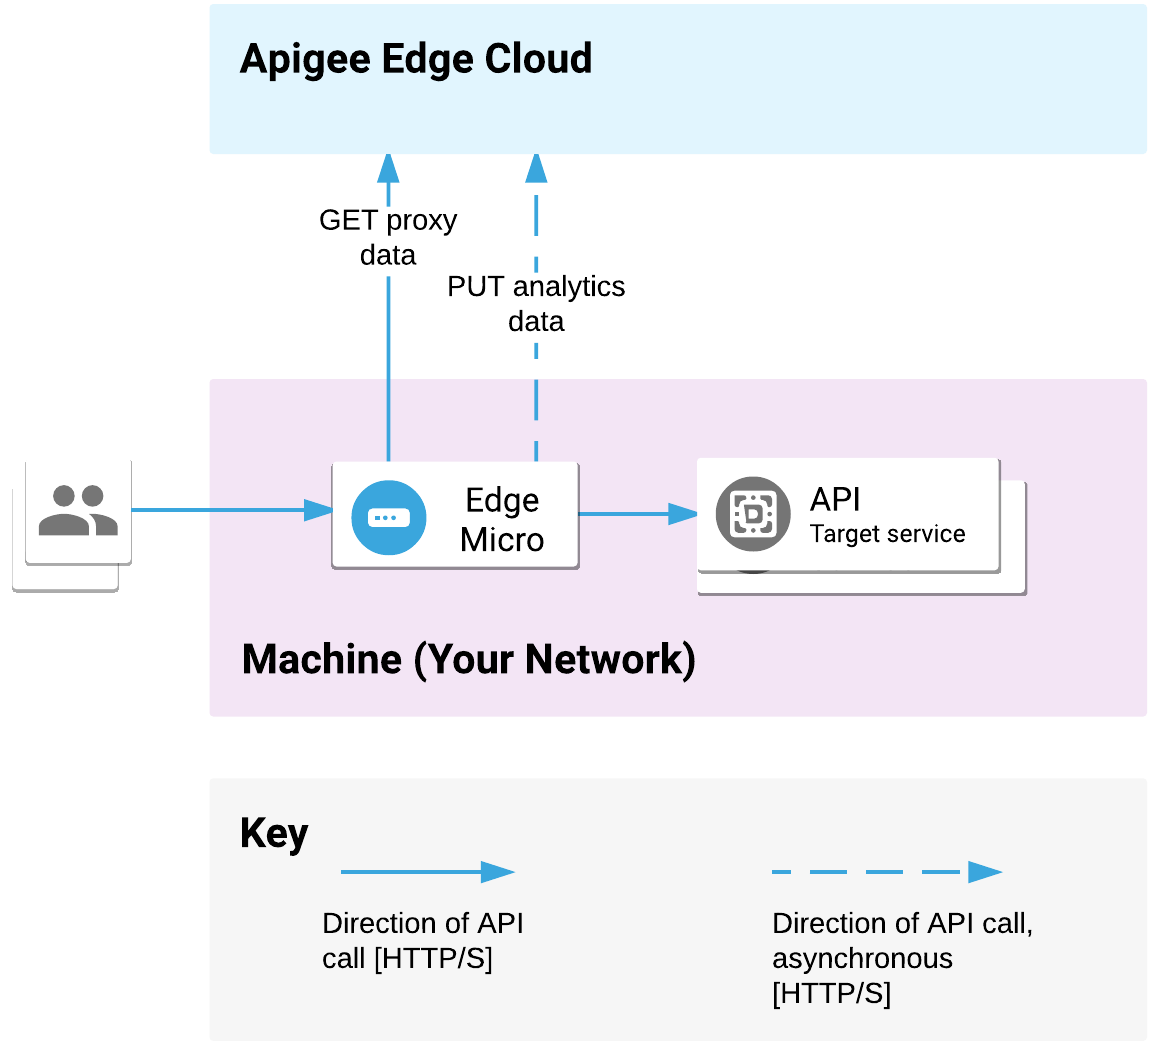 La micropuerta de enlace perimetral se implementa en la red. Procesa las solicitudes a la API de los clientes y llama a los servicios objetivo. La micropuerta de enlace comunica datos de proxy y estadísticas con Apigee Edge Cloud.